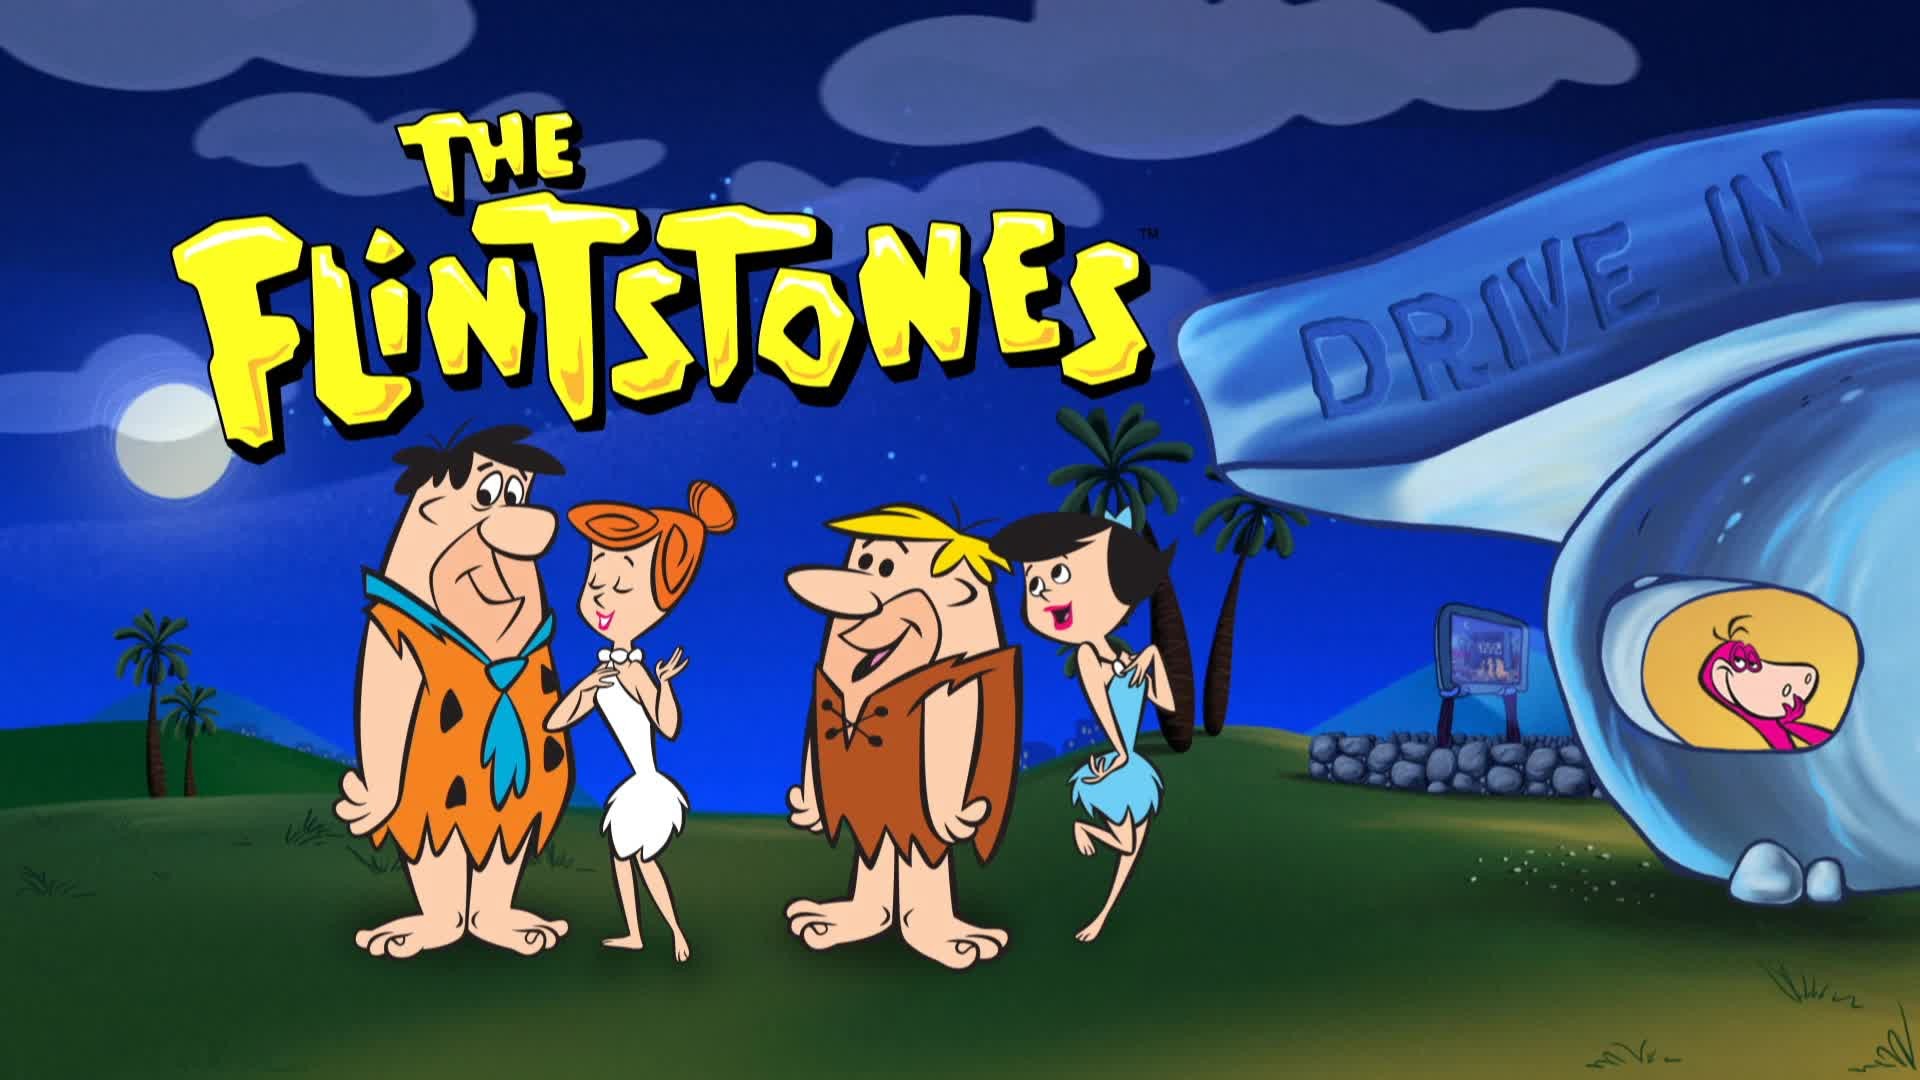 1920x1080 The Flintstones HD Images : Get Free top quality The Flintstones HD Images  for your desktop